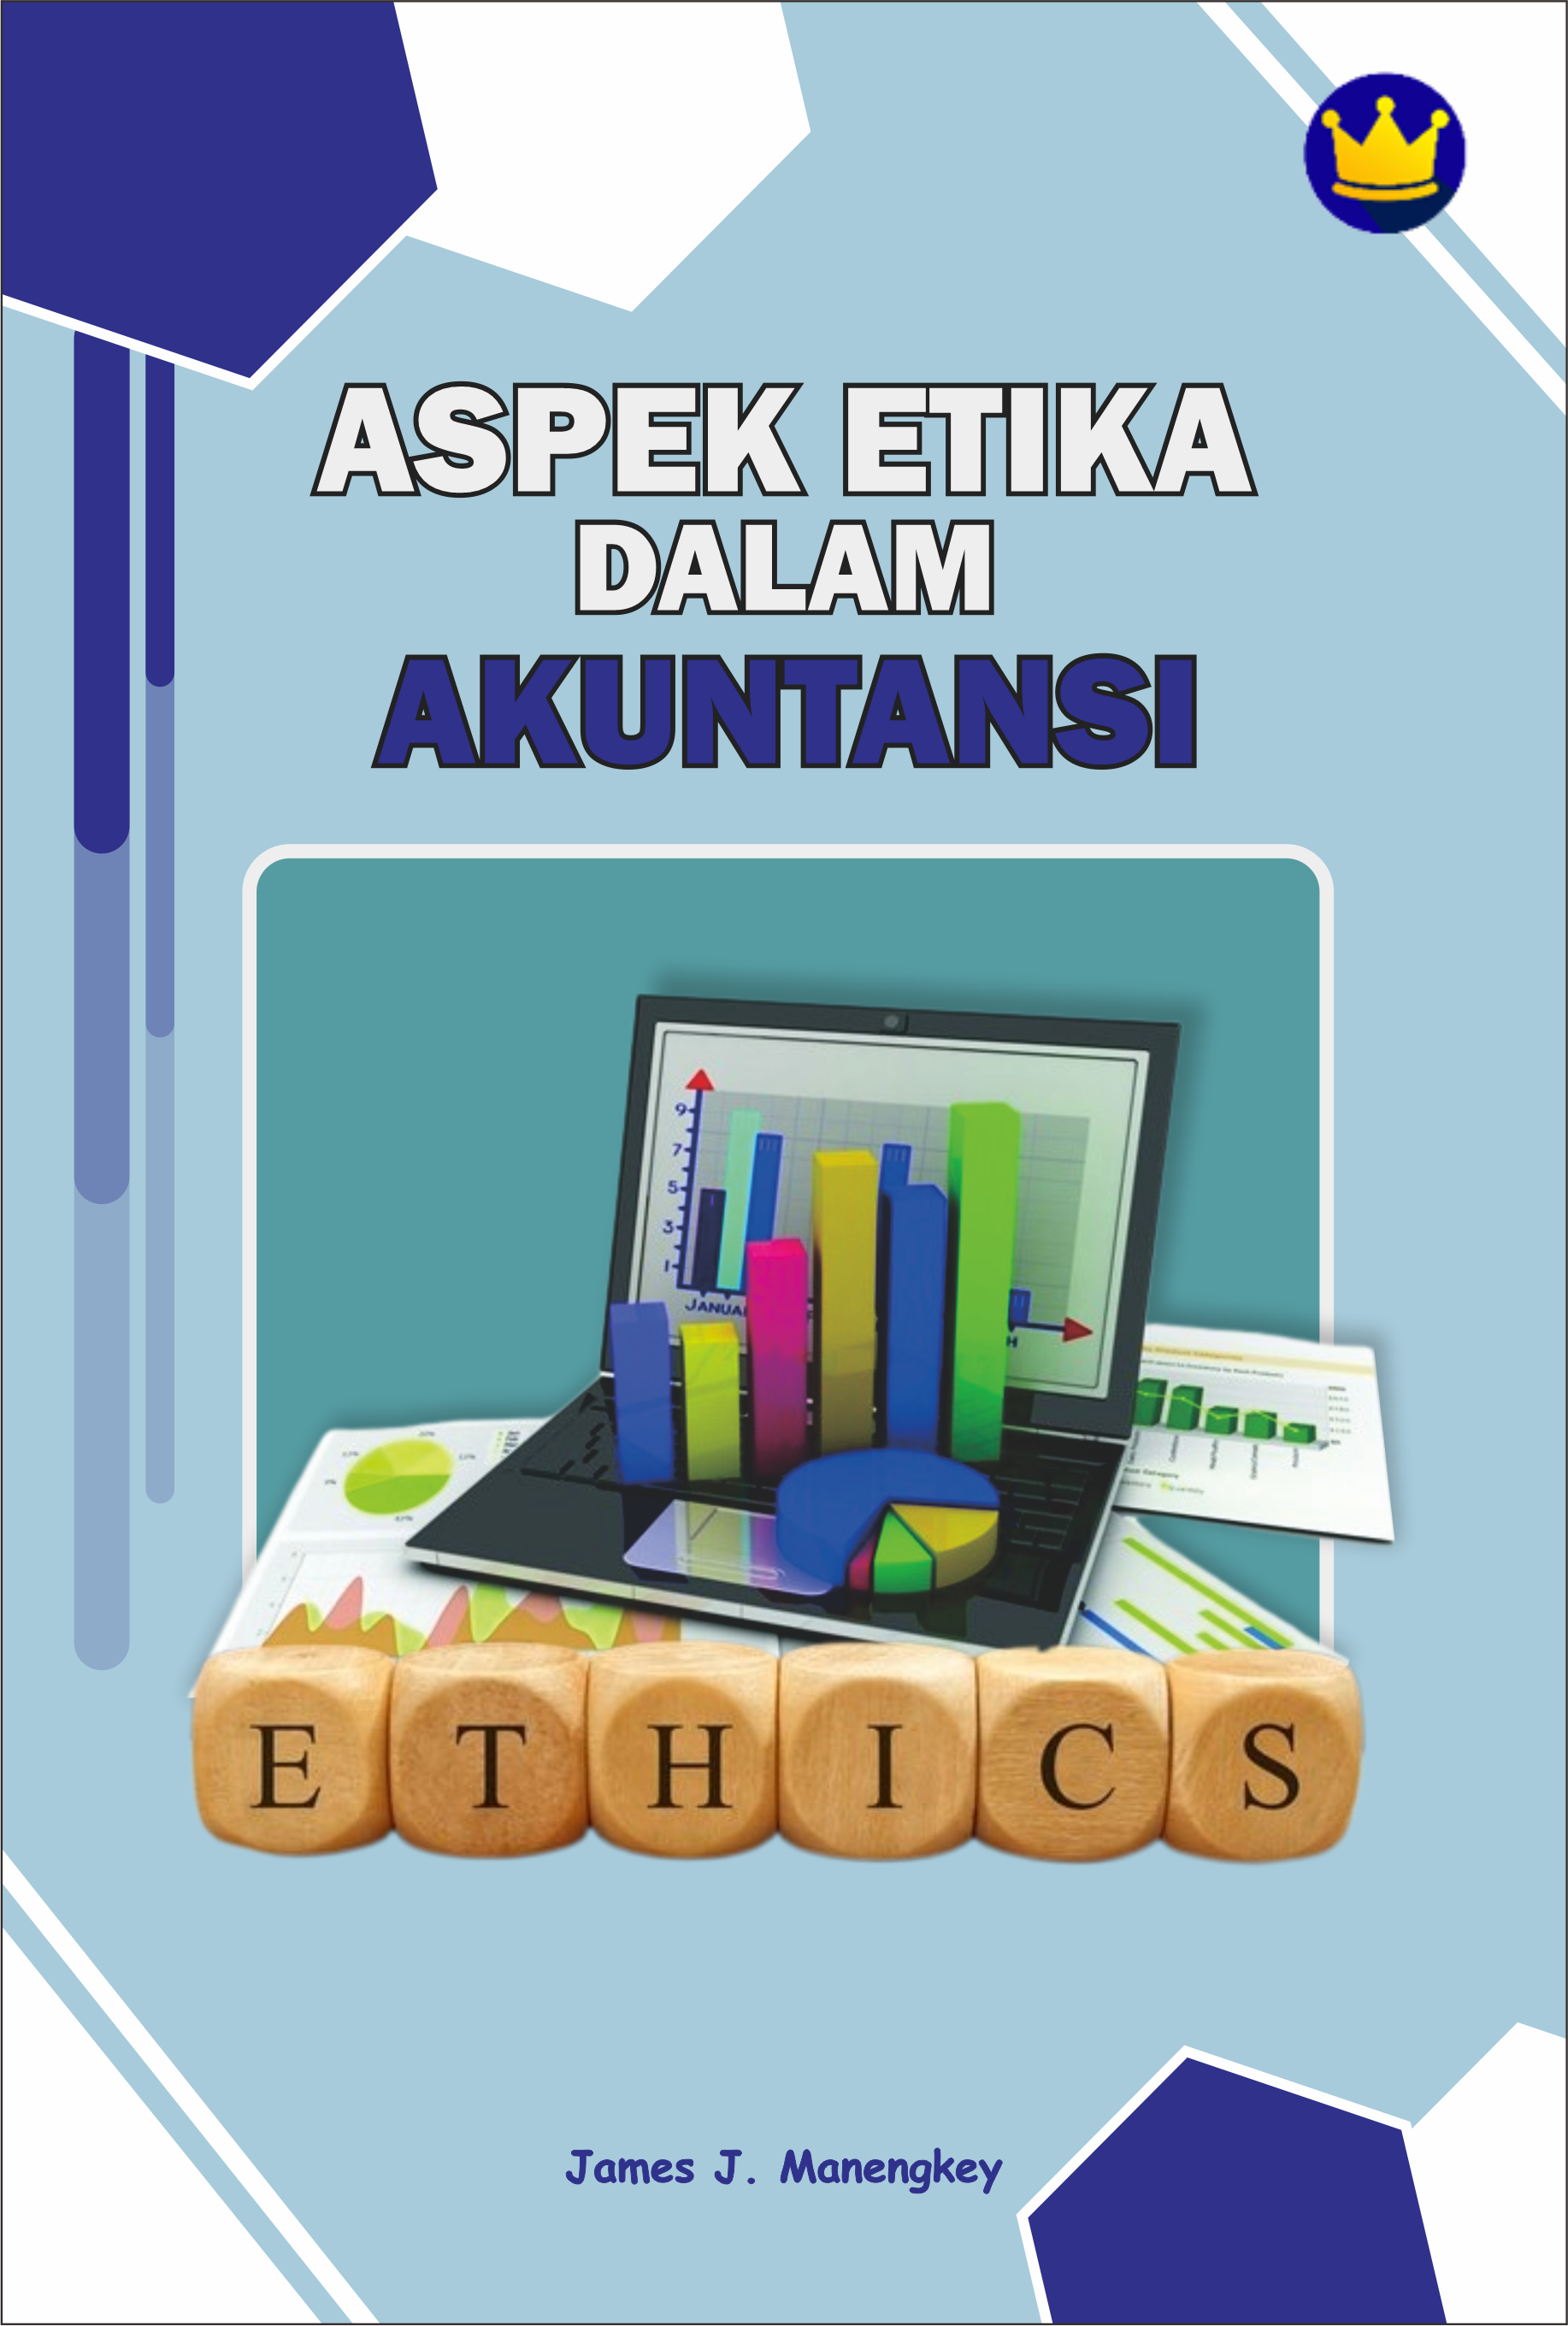 Aspek etika dalam akuntansi [sumber elektronis]